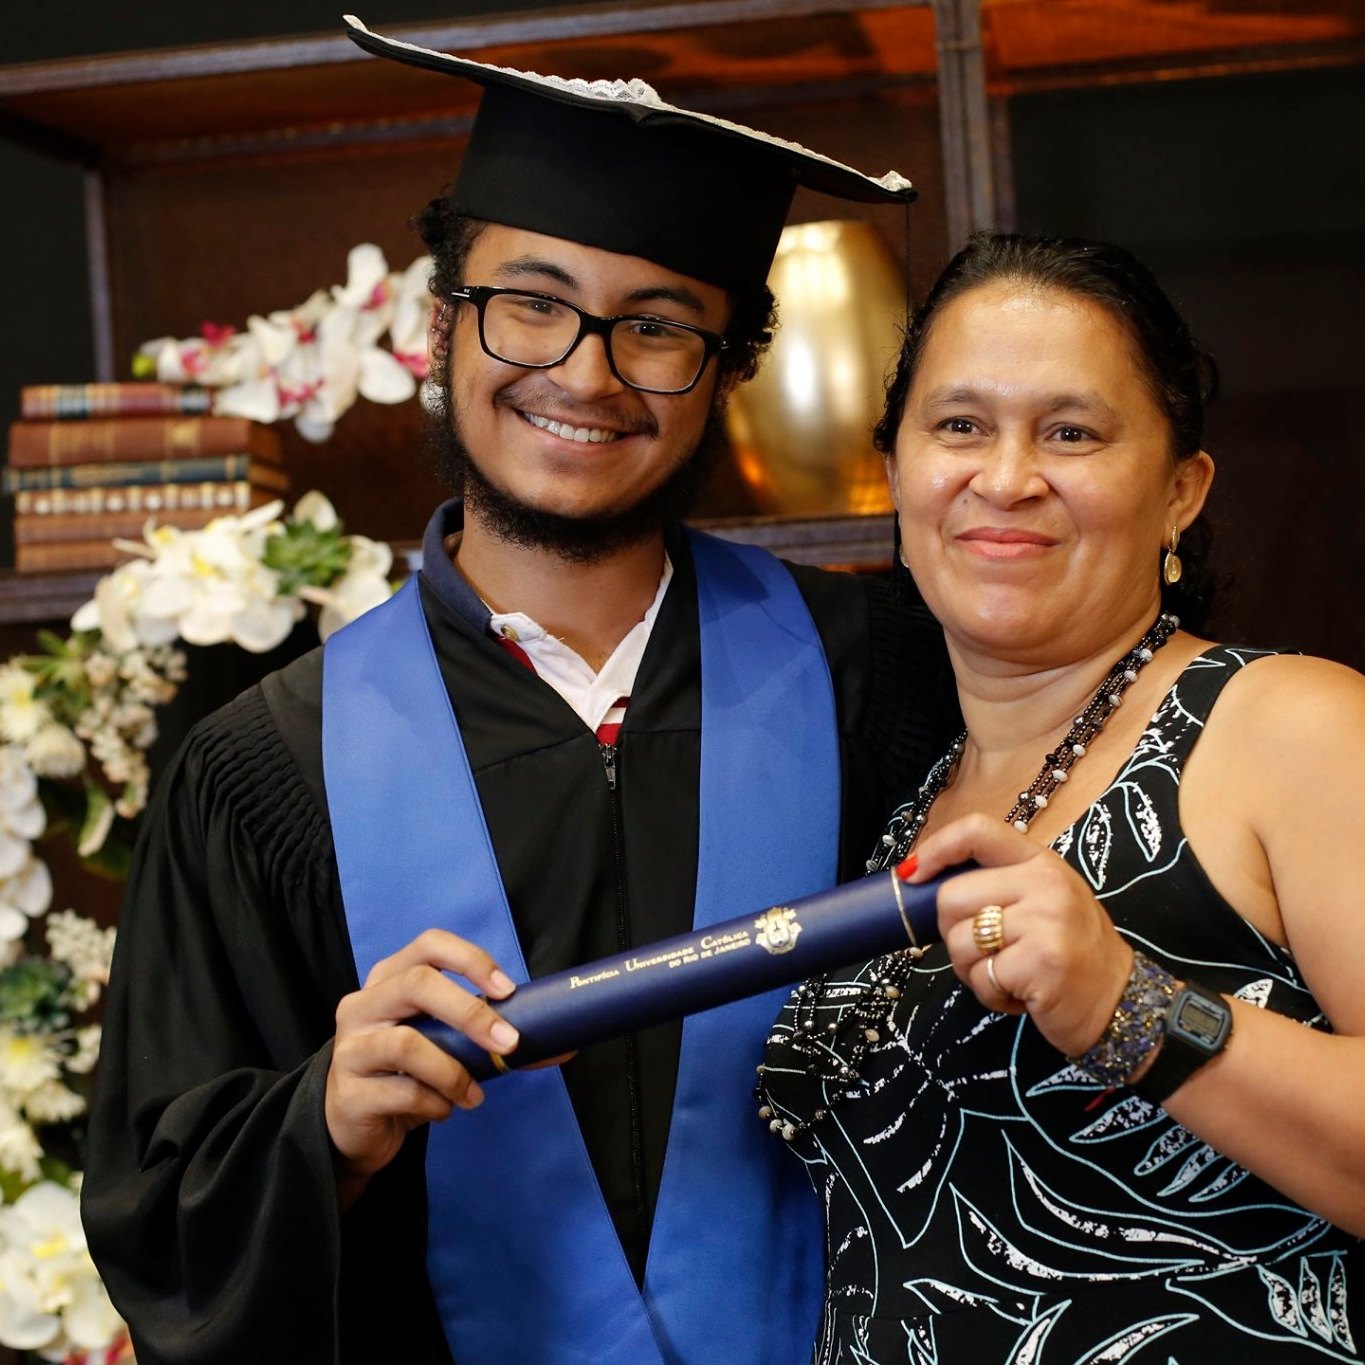 A trajetória de um jovem morador do Santa Marta na busca por um diploma